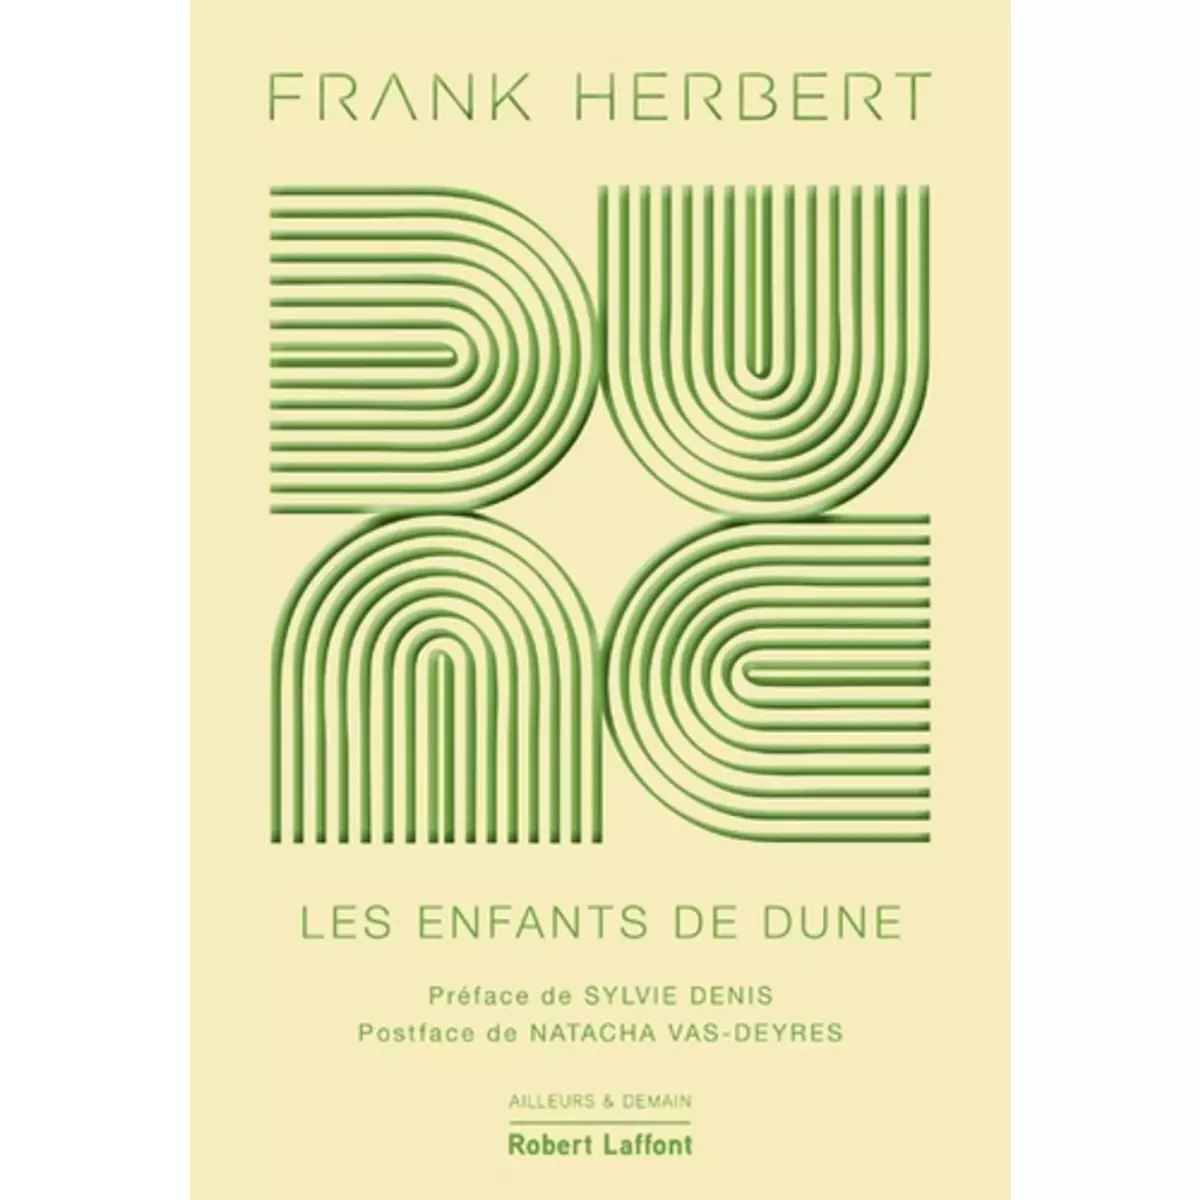  LE CYCLE DE DUNE TOME 3 : LES ENFANTS DE DUNE. EDITION COLLECTOR, Herbert Frank